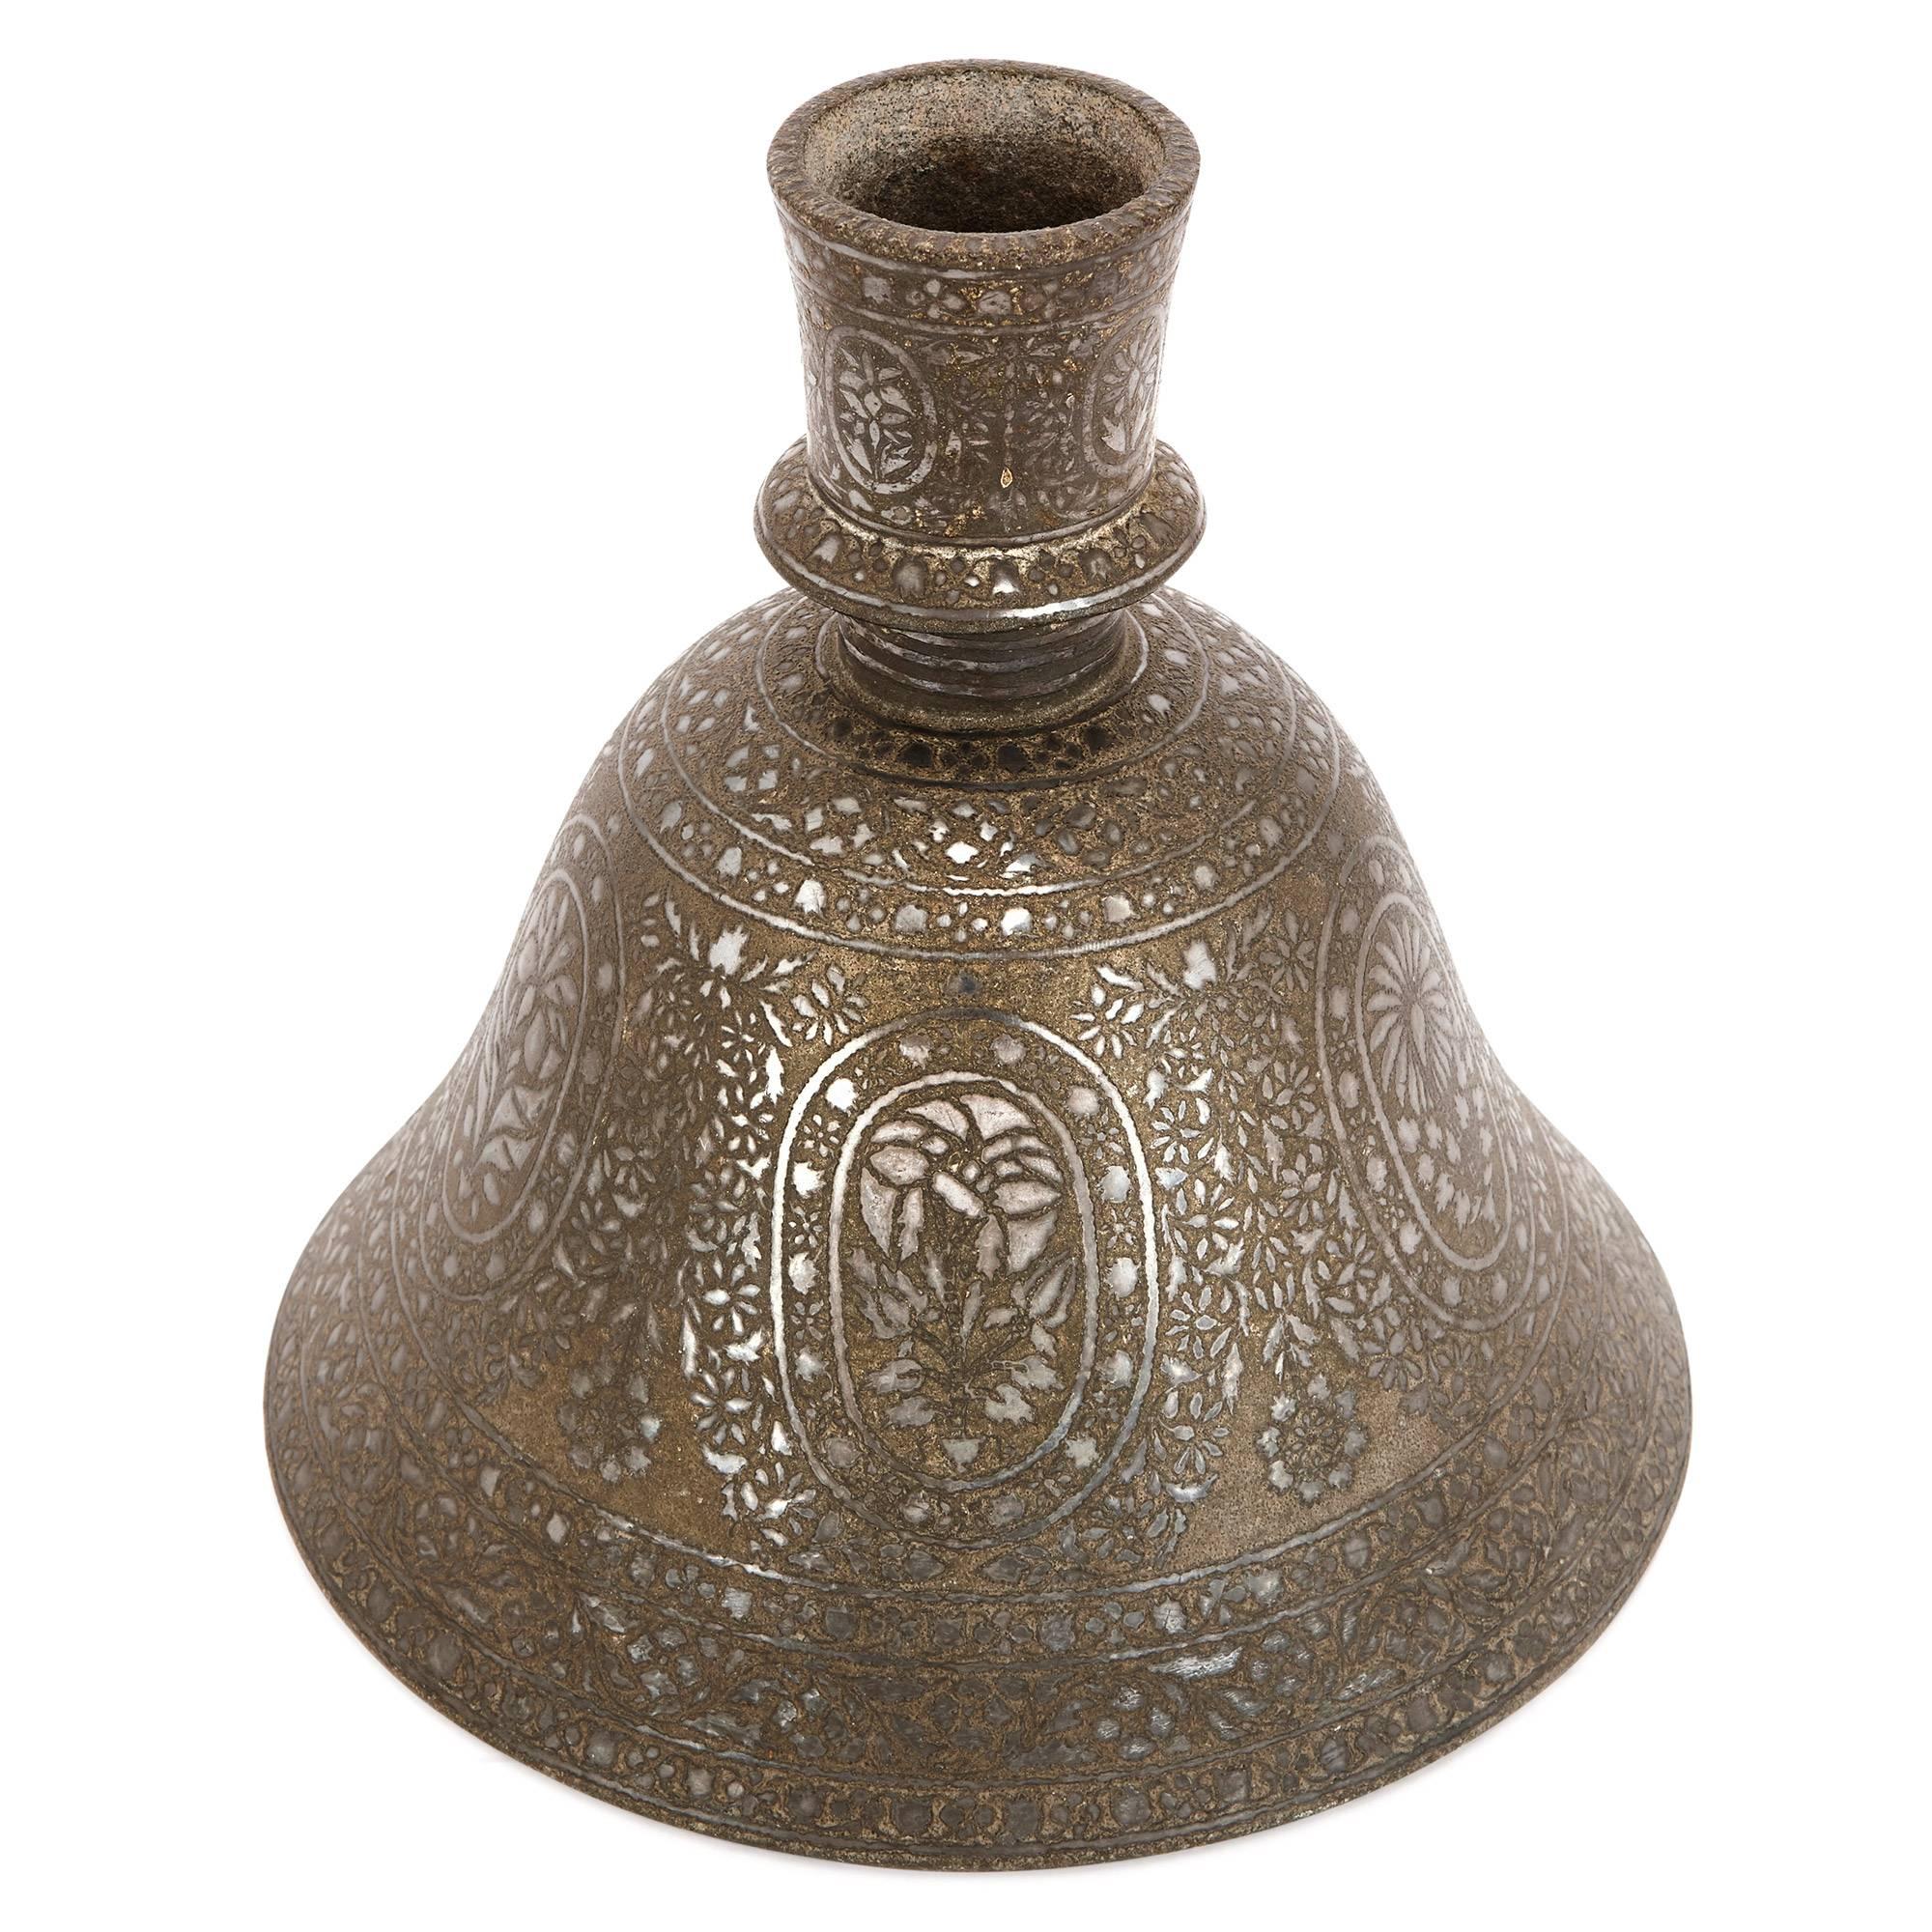 Dieses faszinierende Stück stammt aus dem 19. Jahrhundert aus Indien, wo es als Wasserbasis für eine Wasserpfeife (Shisha) verwendet wurde. Beim traditionellen Wasserpfeifenrauchen ist der Pfeifenboden normalerweise das dekorativste Element des